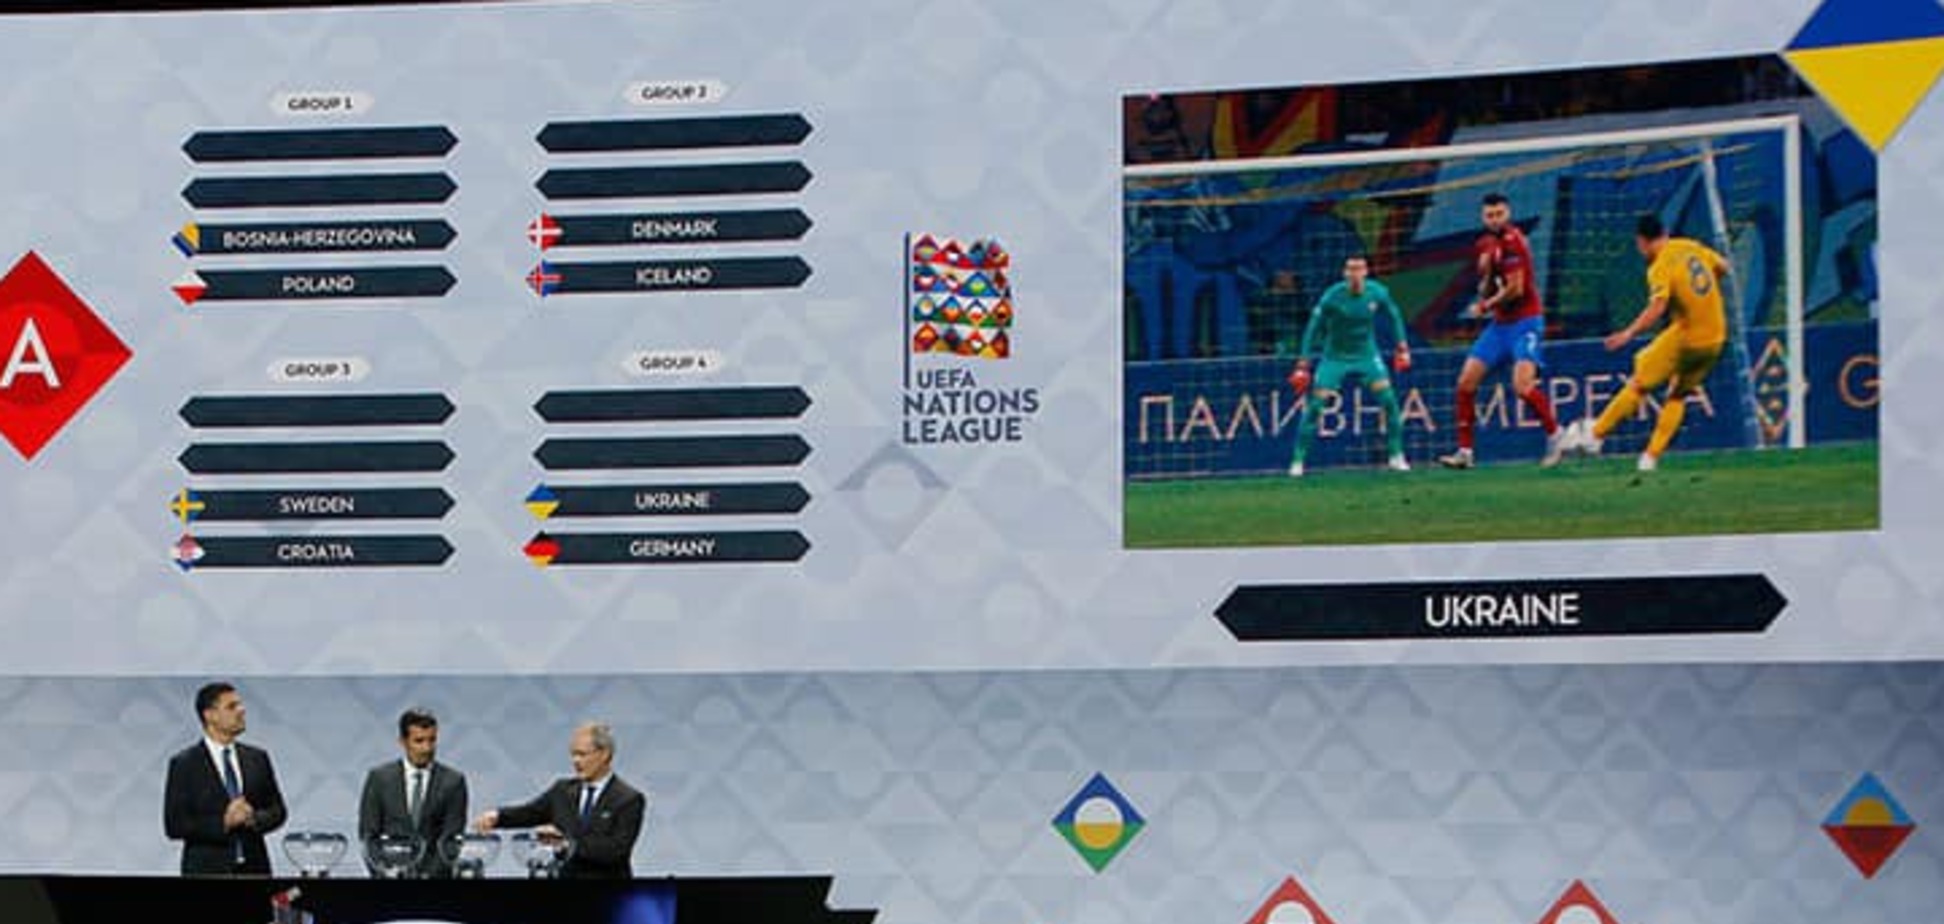 Сборная Украины в Лиге наций: расписание матчей